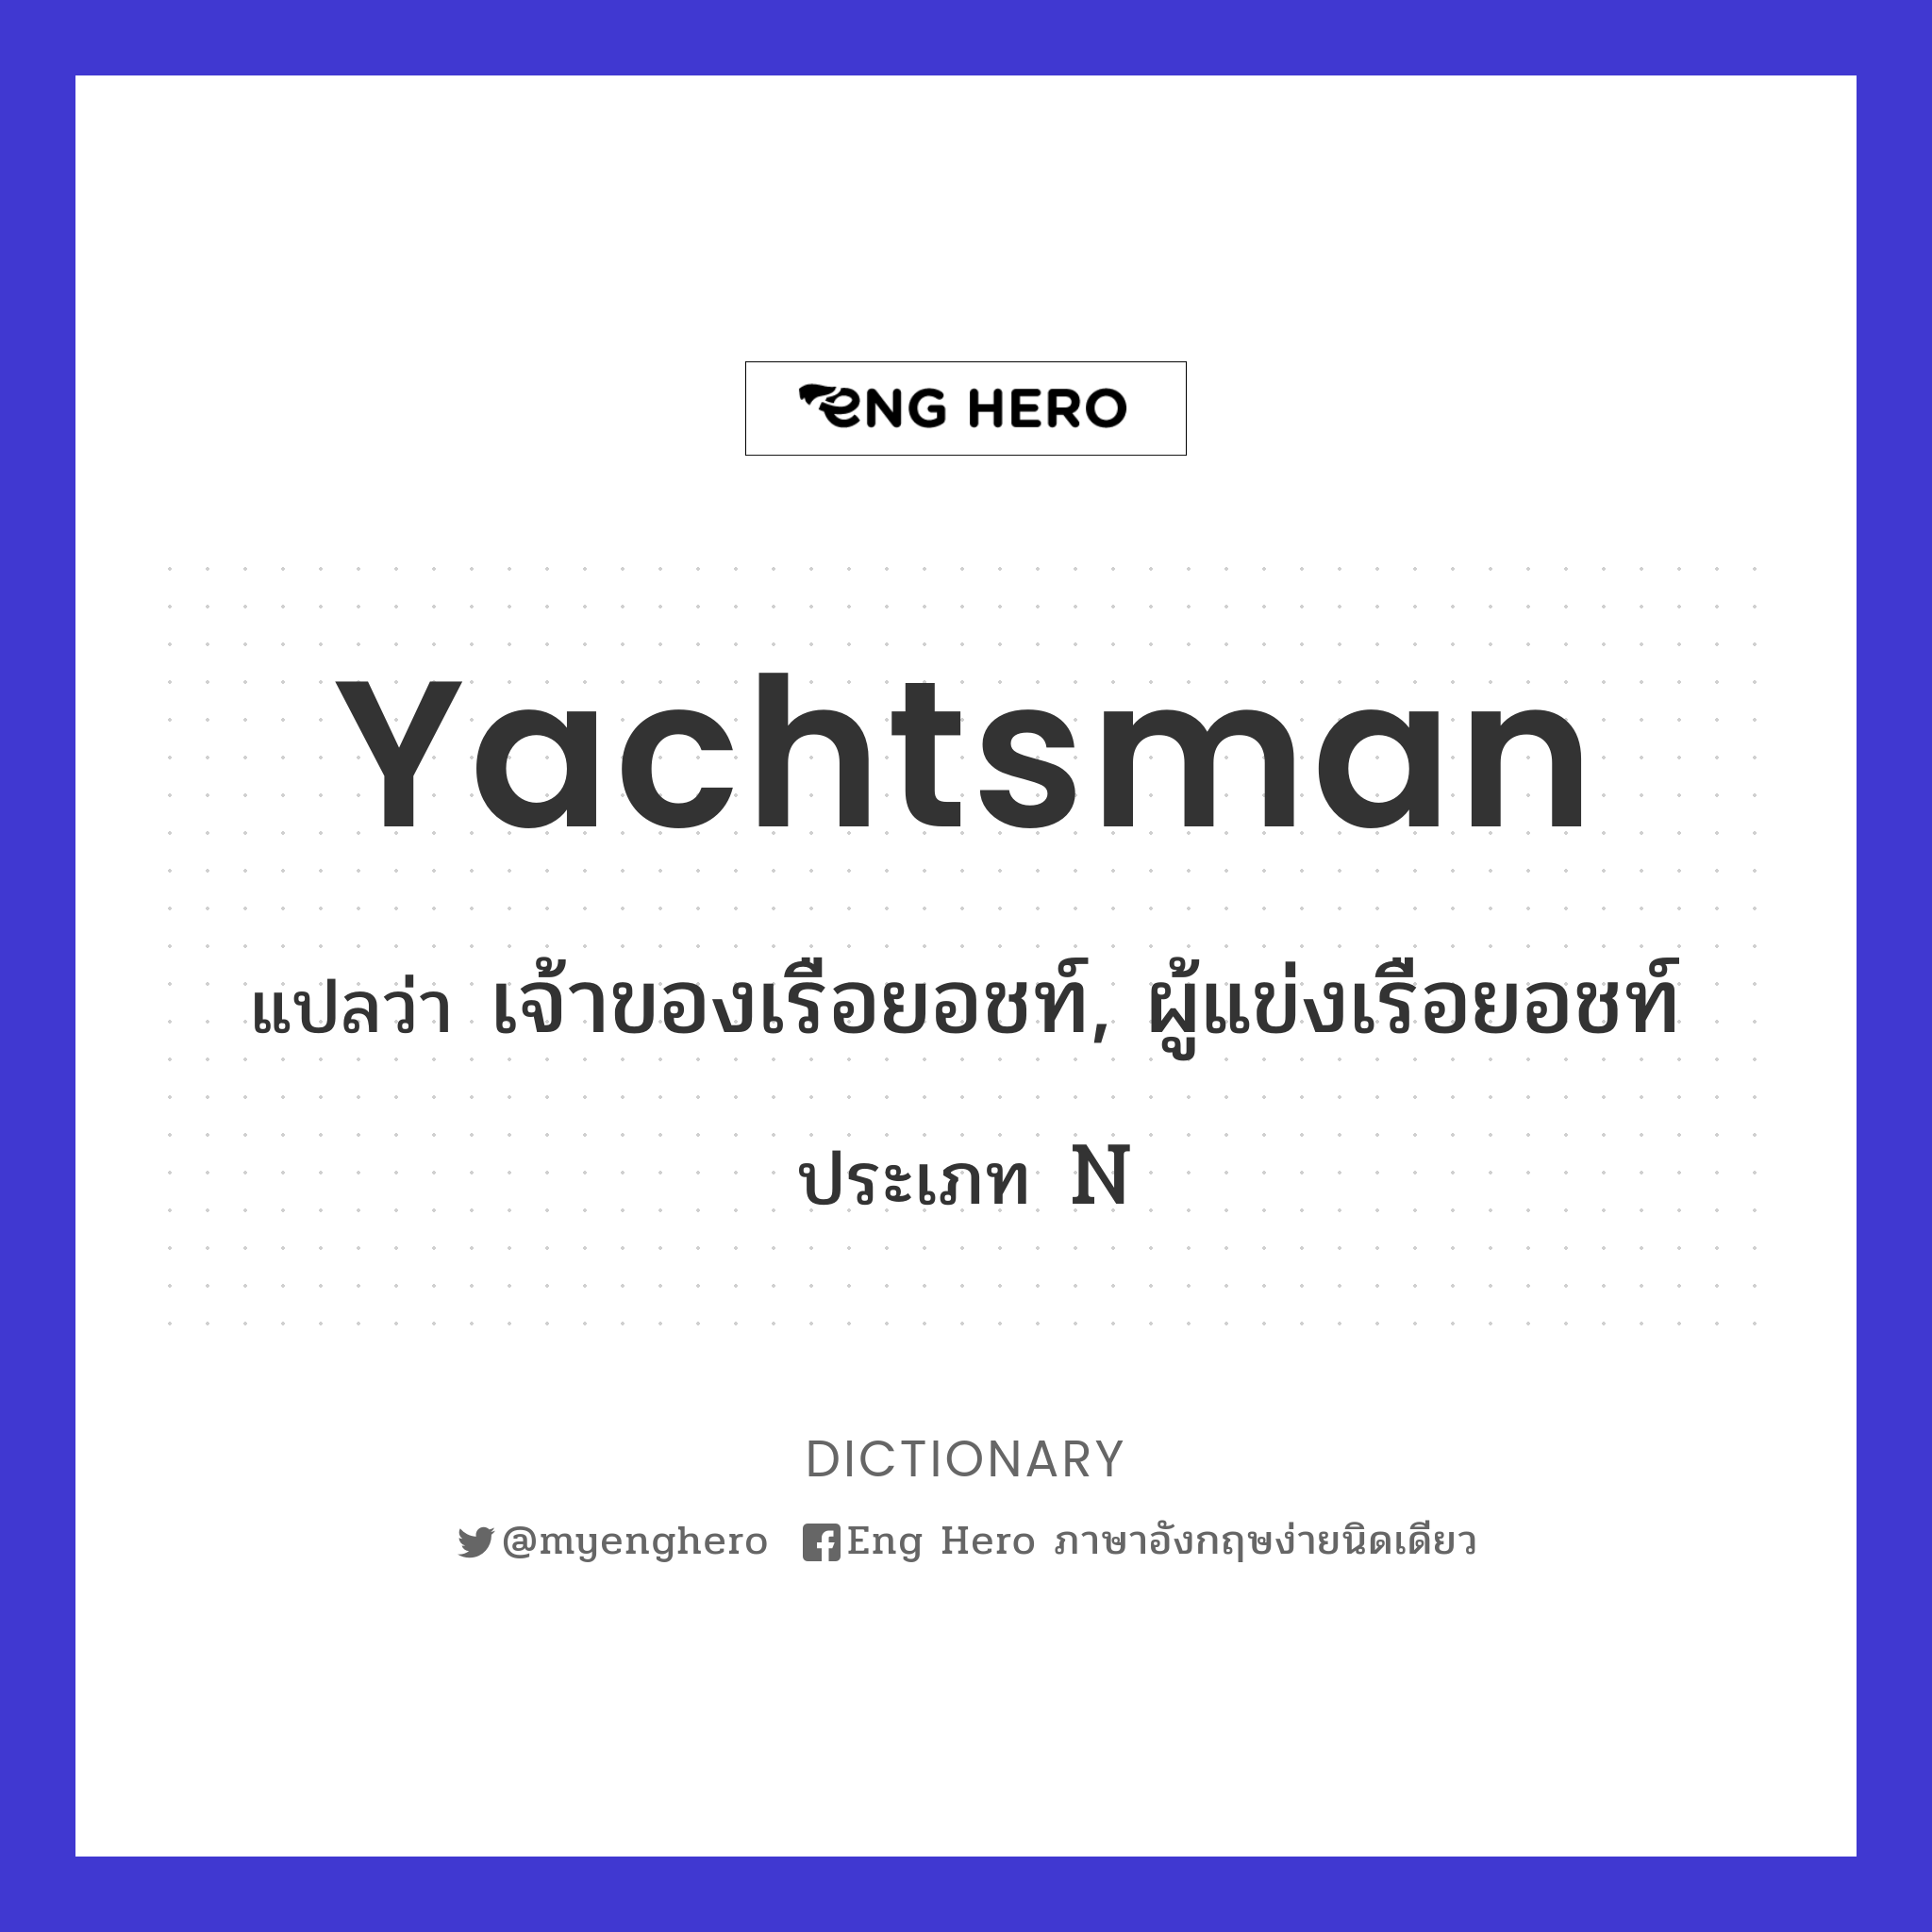 yachtsman